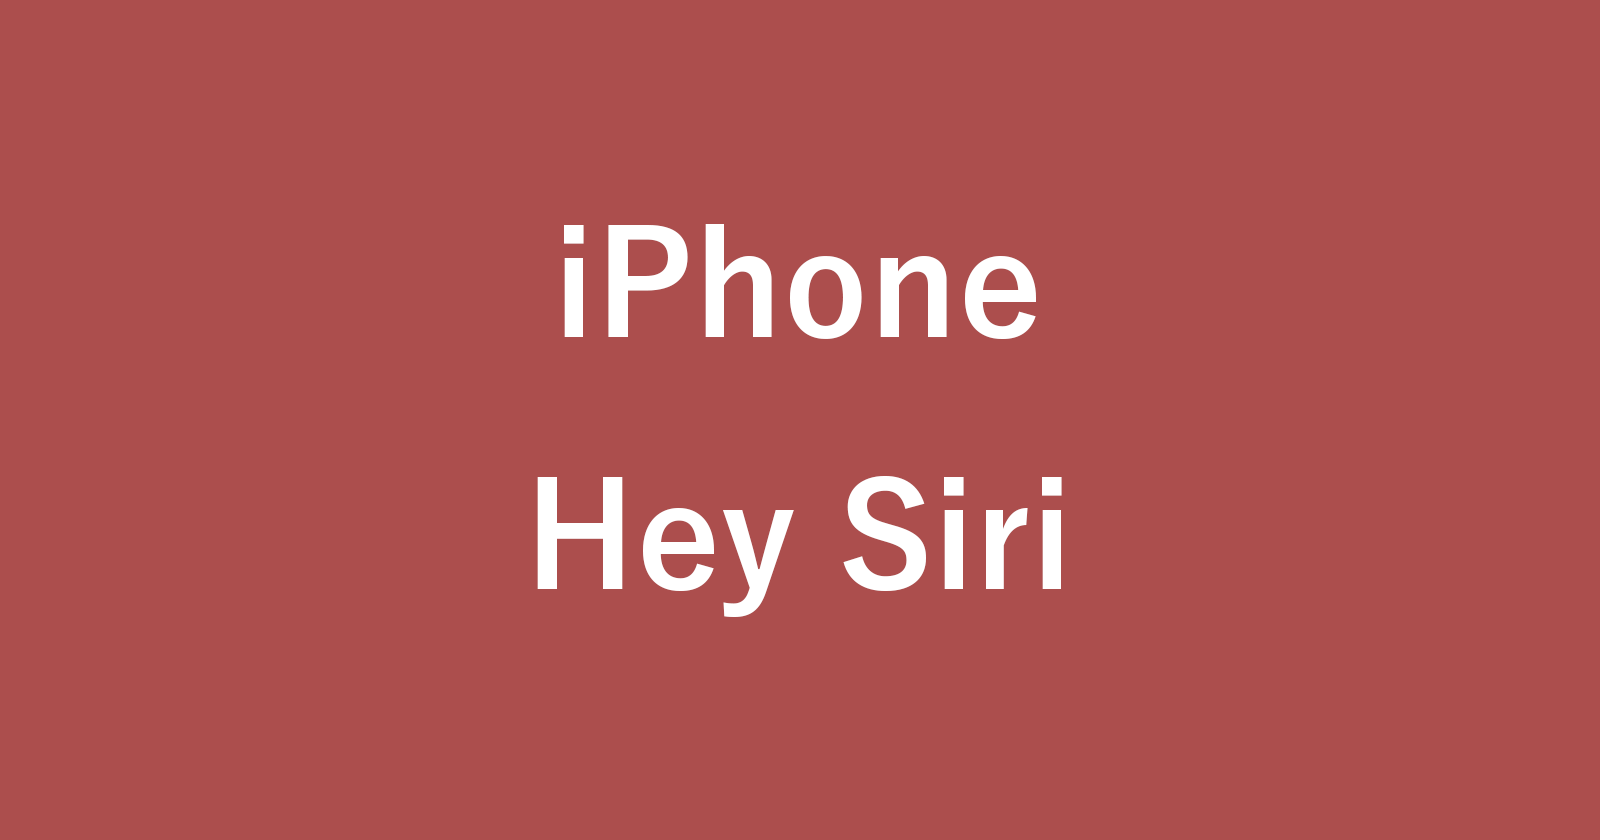 iphone hey siri